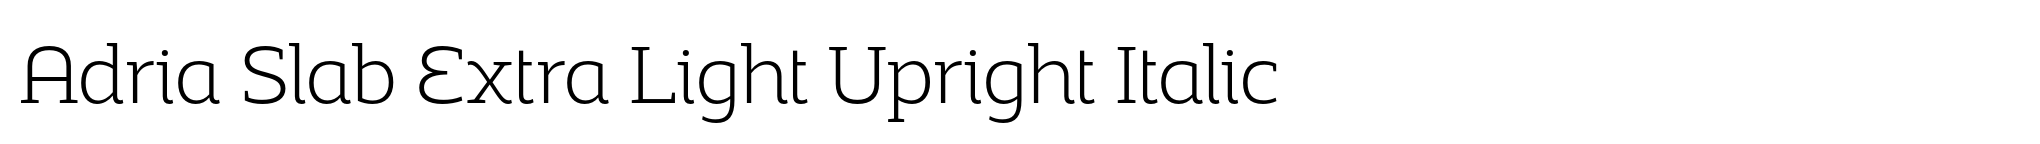 Adria Slab Extra Light Upright Italic image